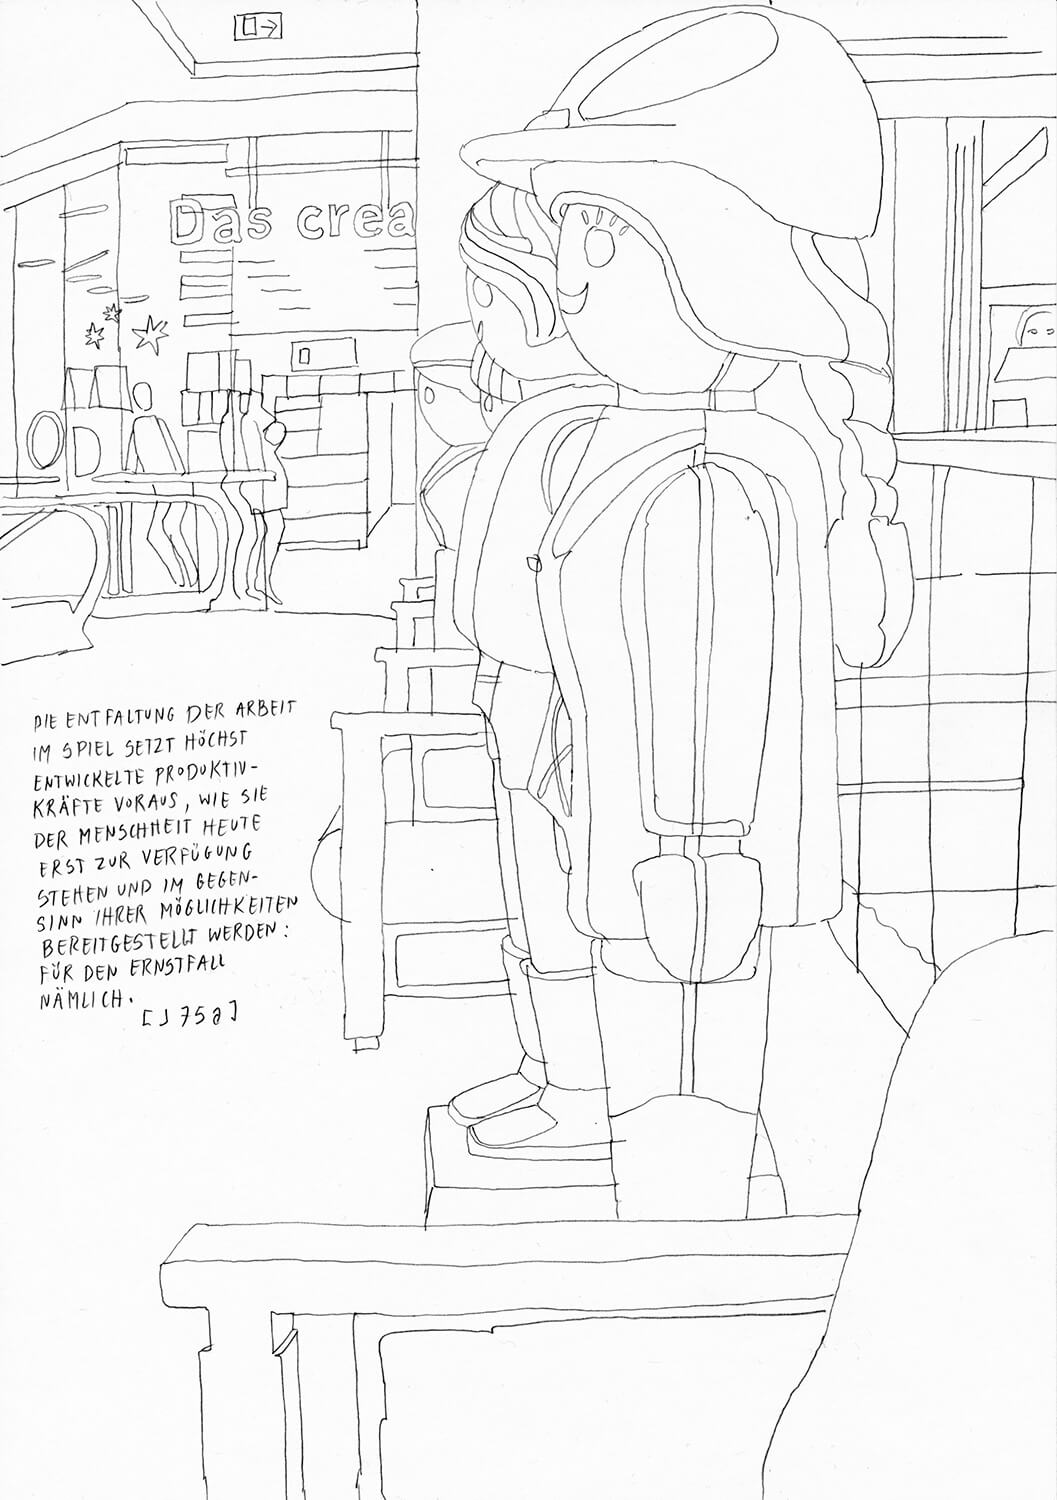 Matthias Beckmann, Passagen-Werk (109), 2019/2020, Bleistift auf Papier, 29,7 x 21 cm